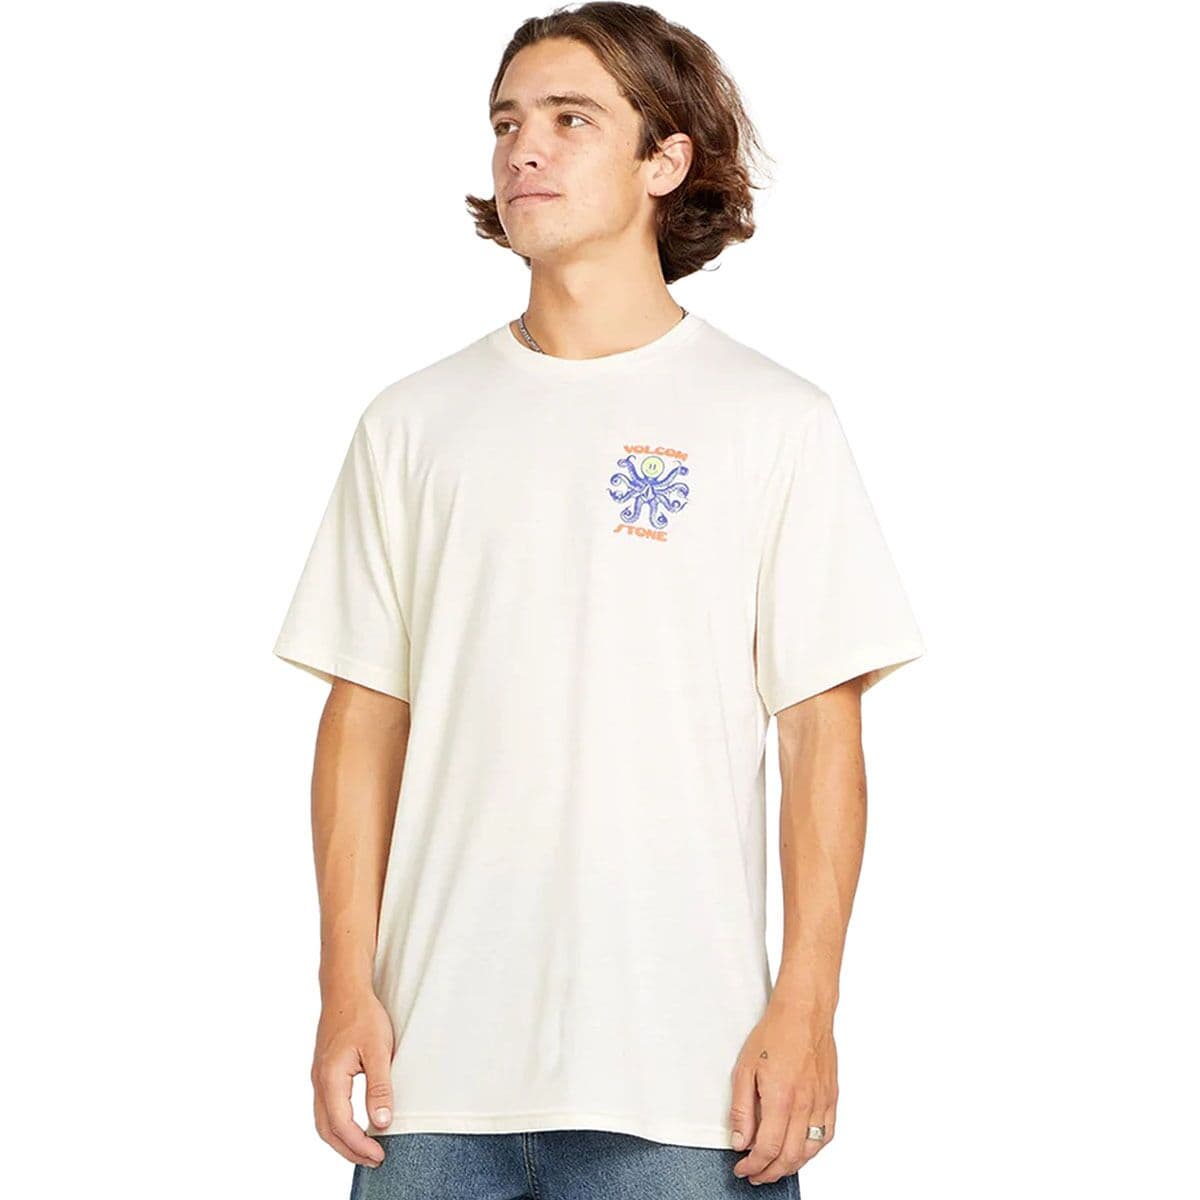 Octoparty T-Shirt - Men